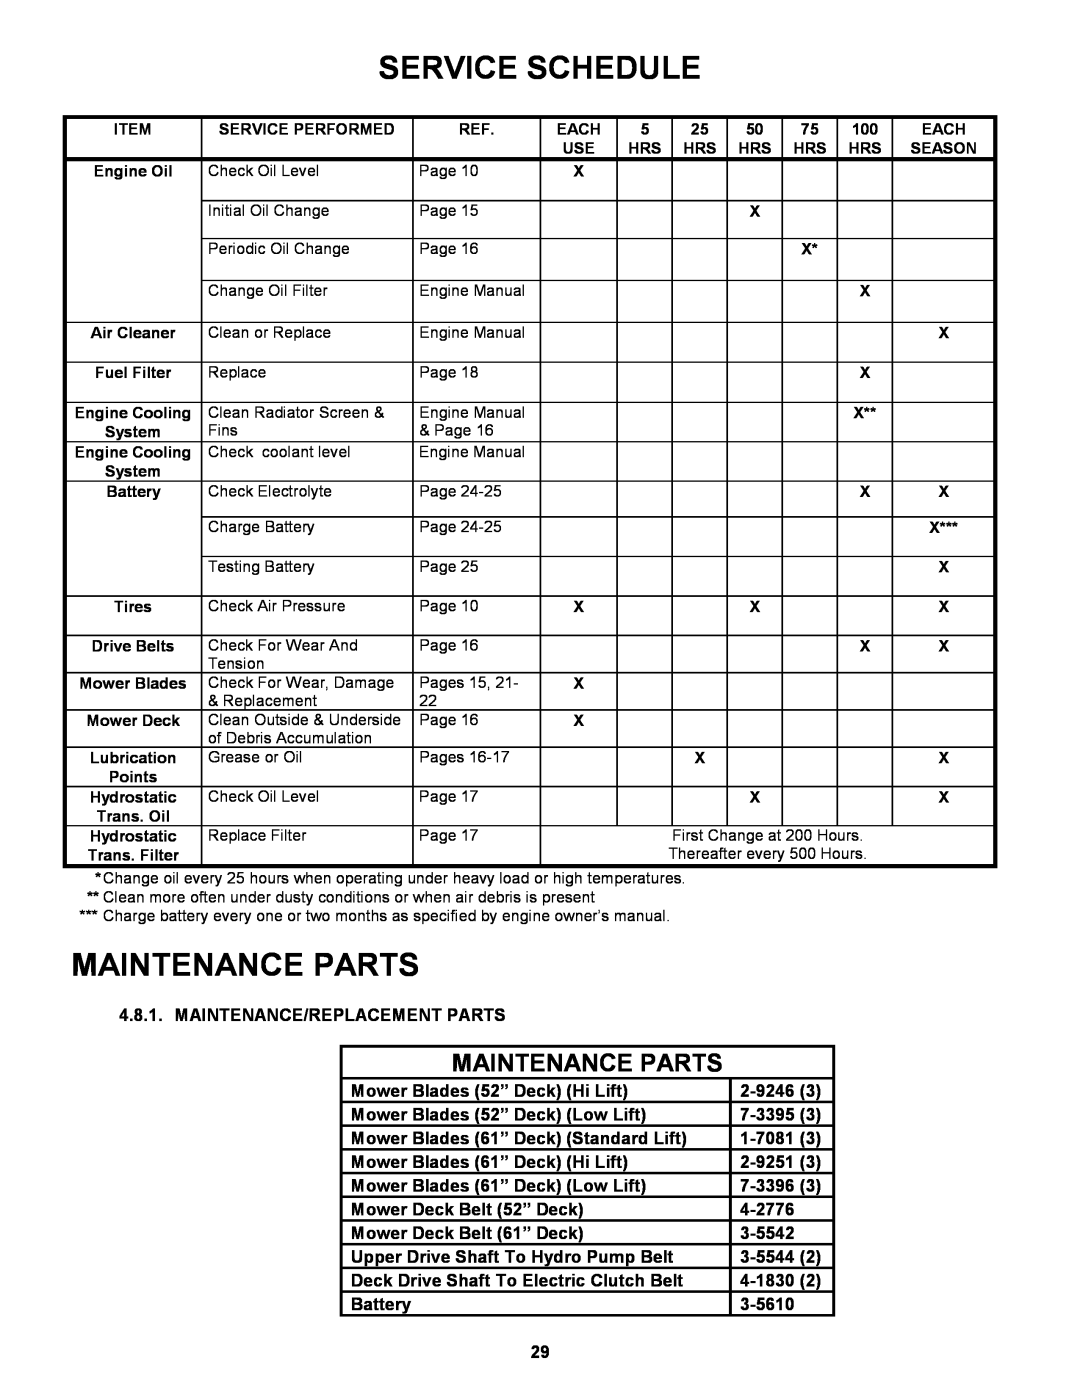 Snapper ZF6101M Service Schedule, Maintenance Parts, Maintenance/Replacement Parts, Mower Blades 52” Deck Hi Lift, 2-9246 